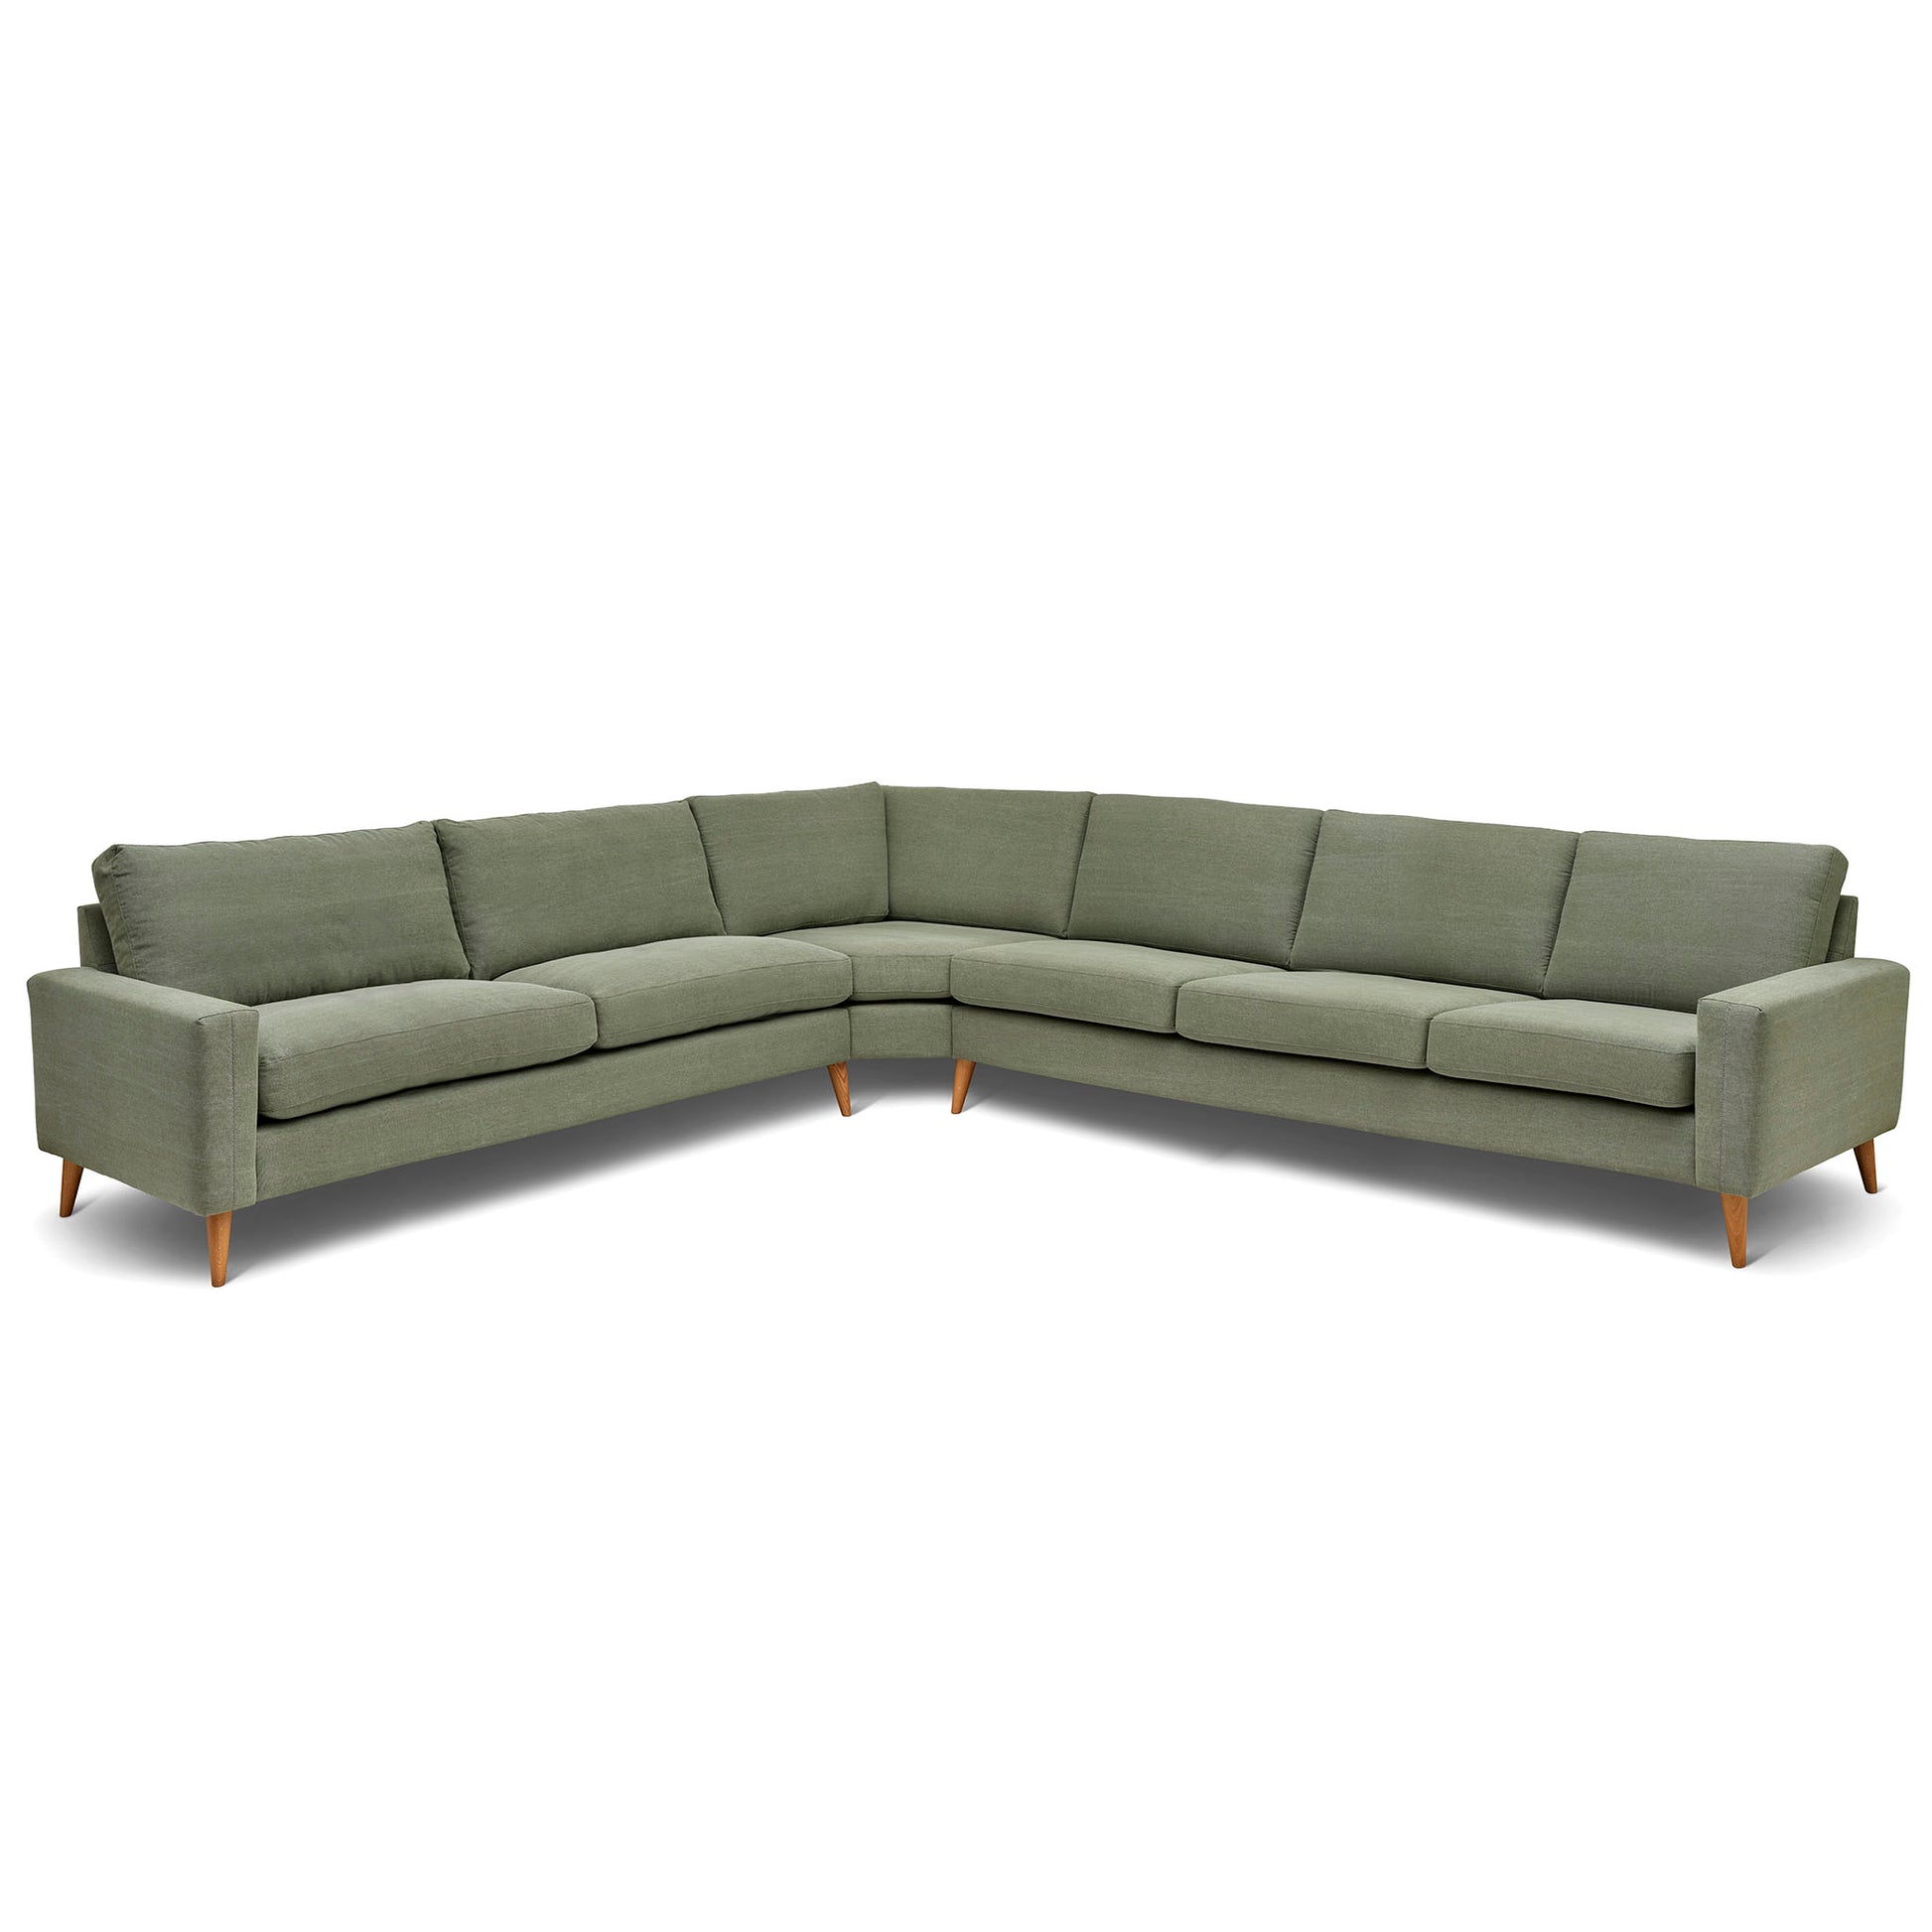 Stor rektangulär hörnsoffa med måttet 321x360 cm. Sittvänlig soffa för äldre i grågrönt tyg